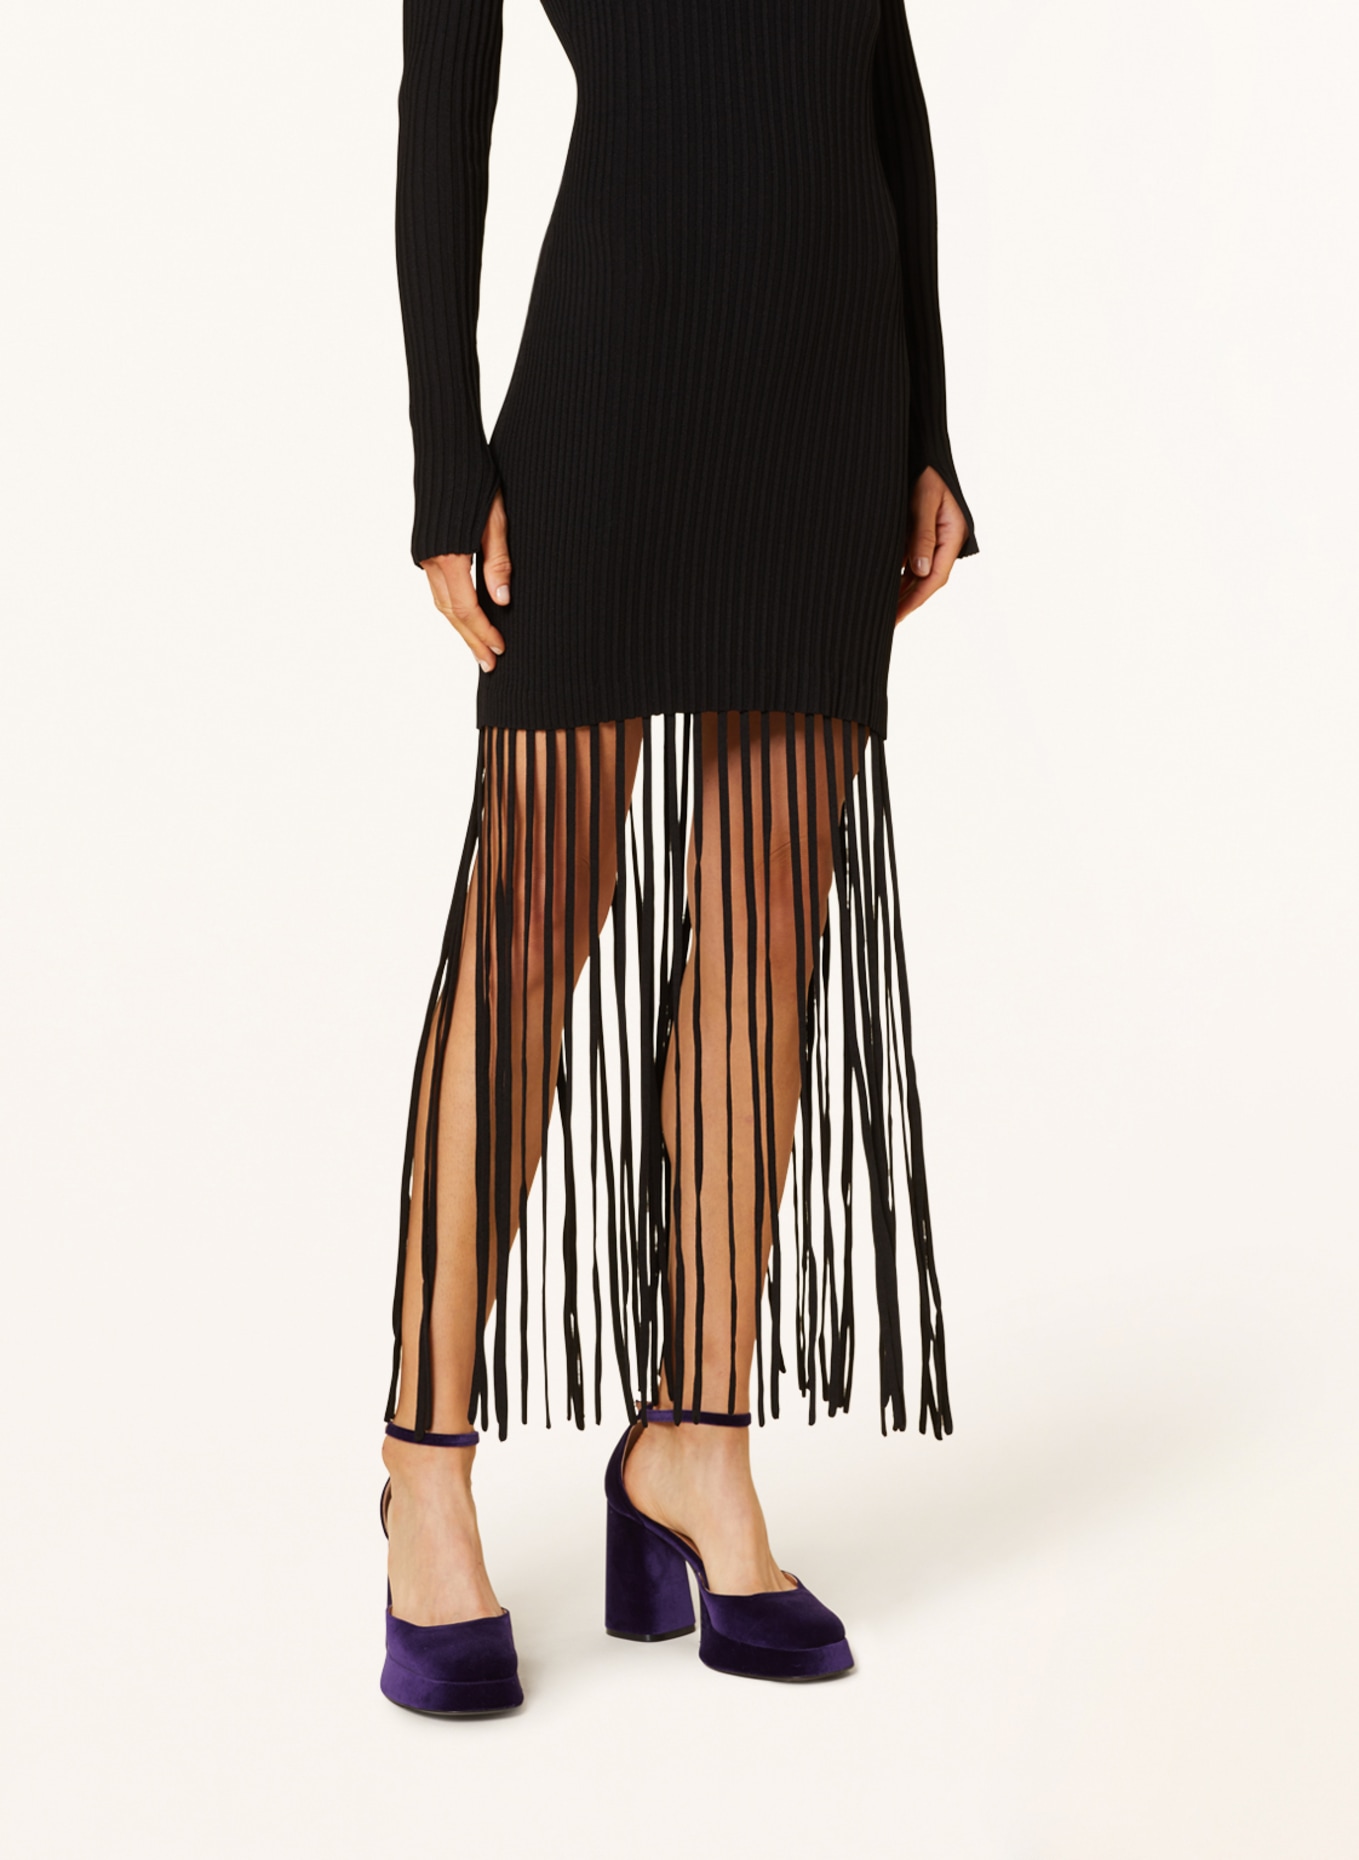 GANNI Knit dress with fringes, Color: BLACK (Image 4)